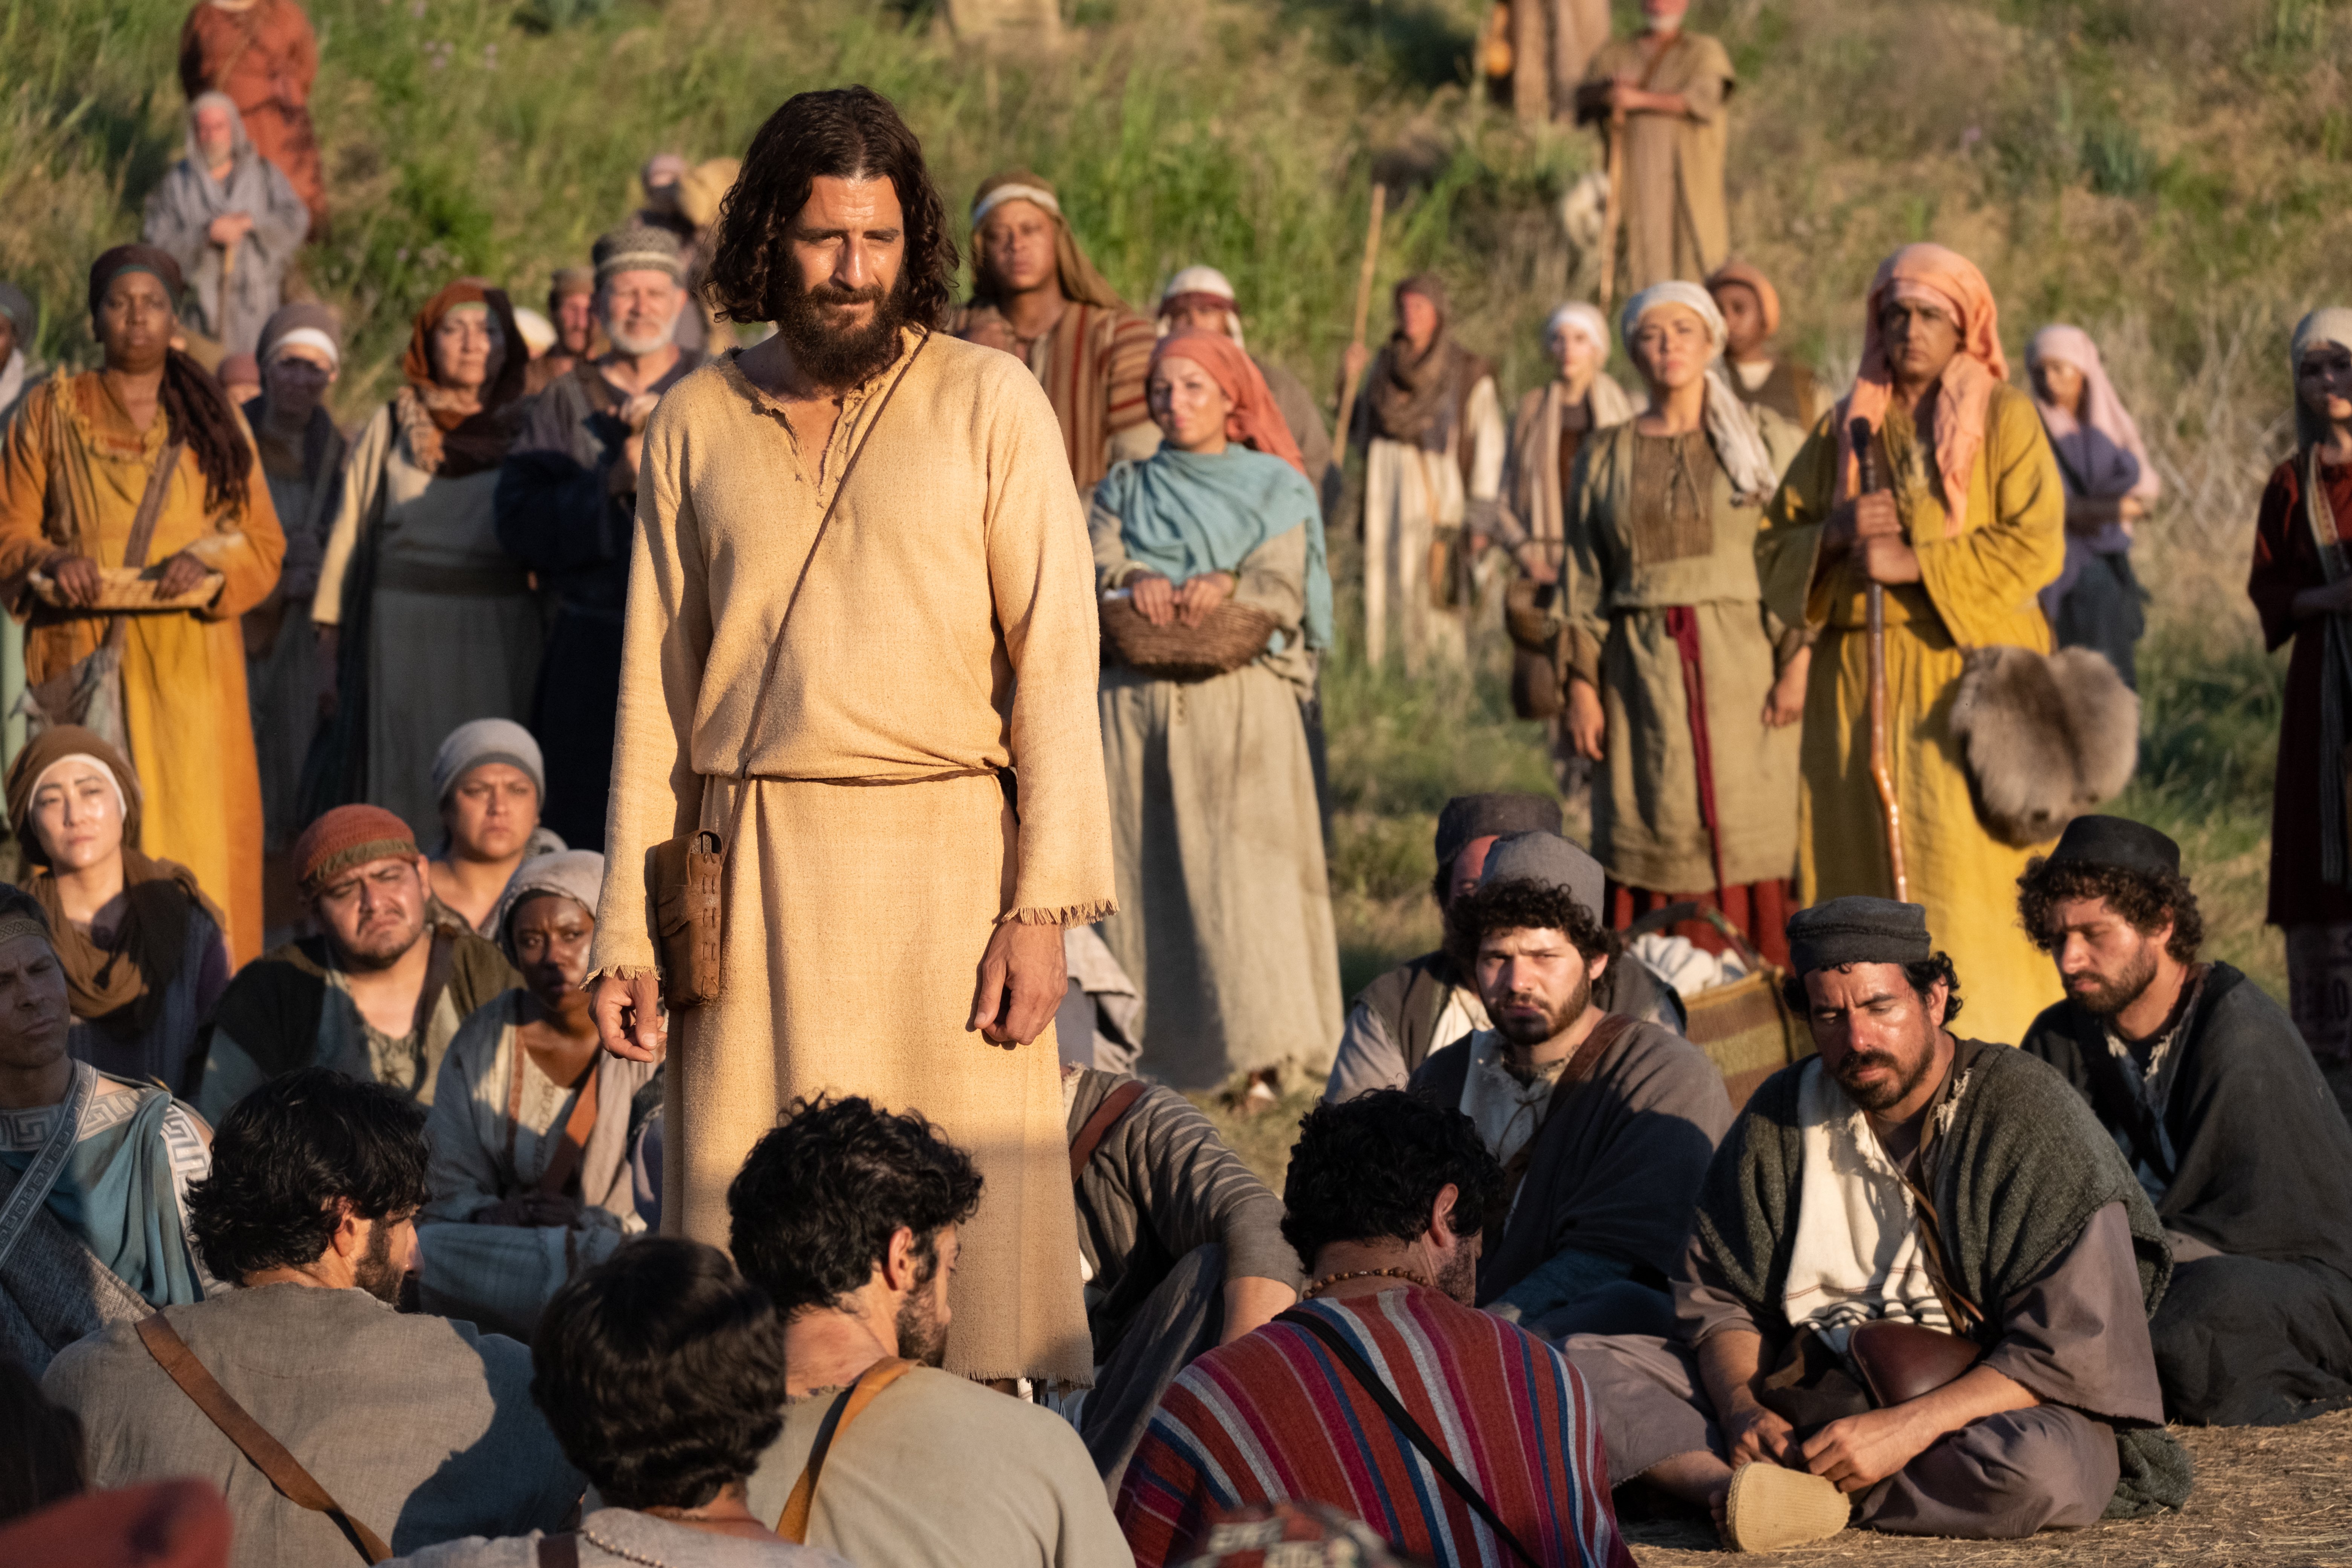 The Chosen: A série mais alegre sobre Jesus